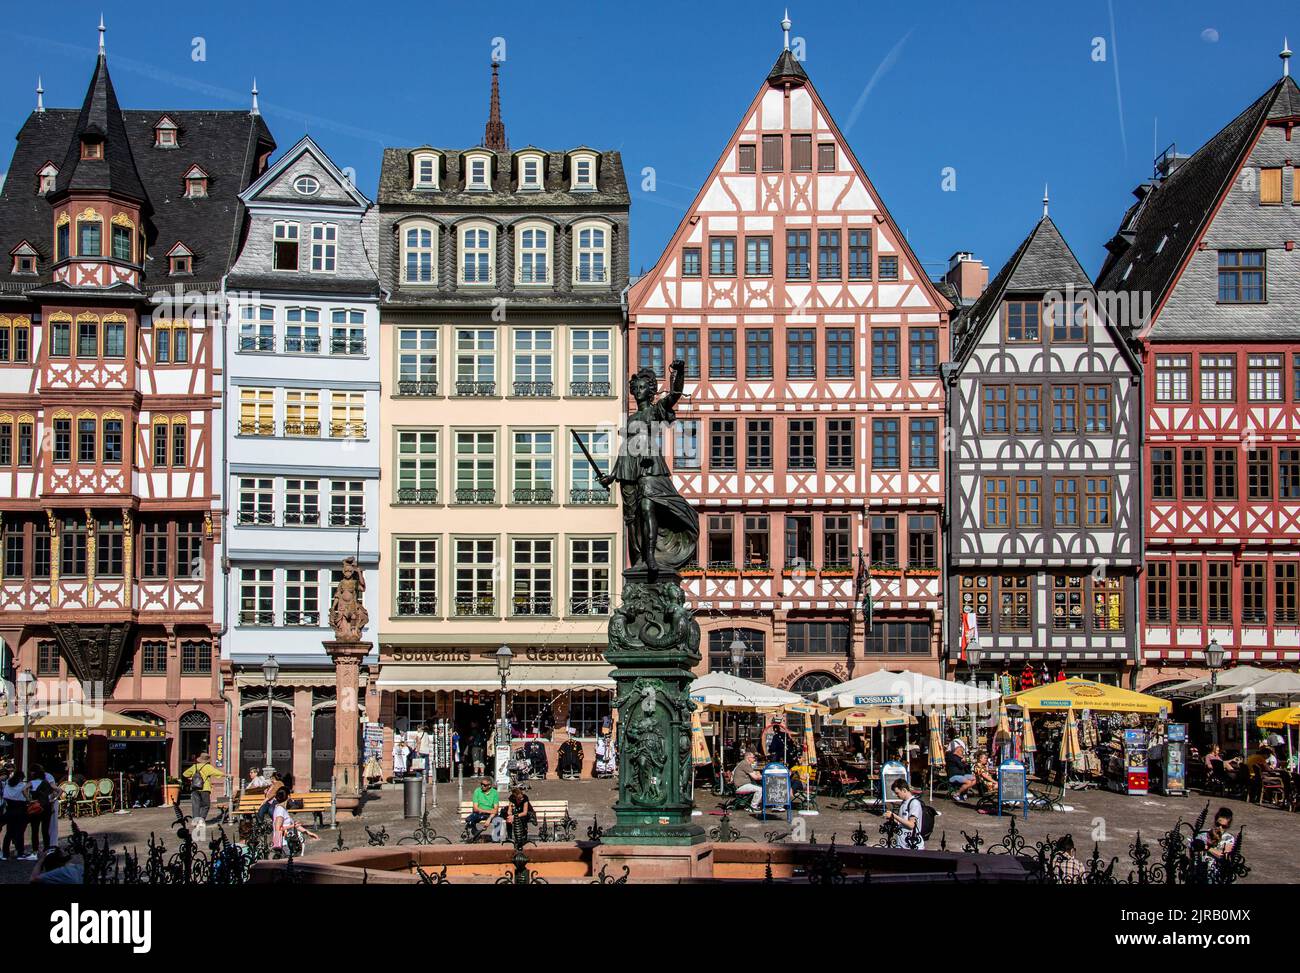 Posti a sedere all'aperto presso i ristoranti di Römerberg, una storica piazza del mercato, Francoforte, Germania Foto Stock